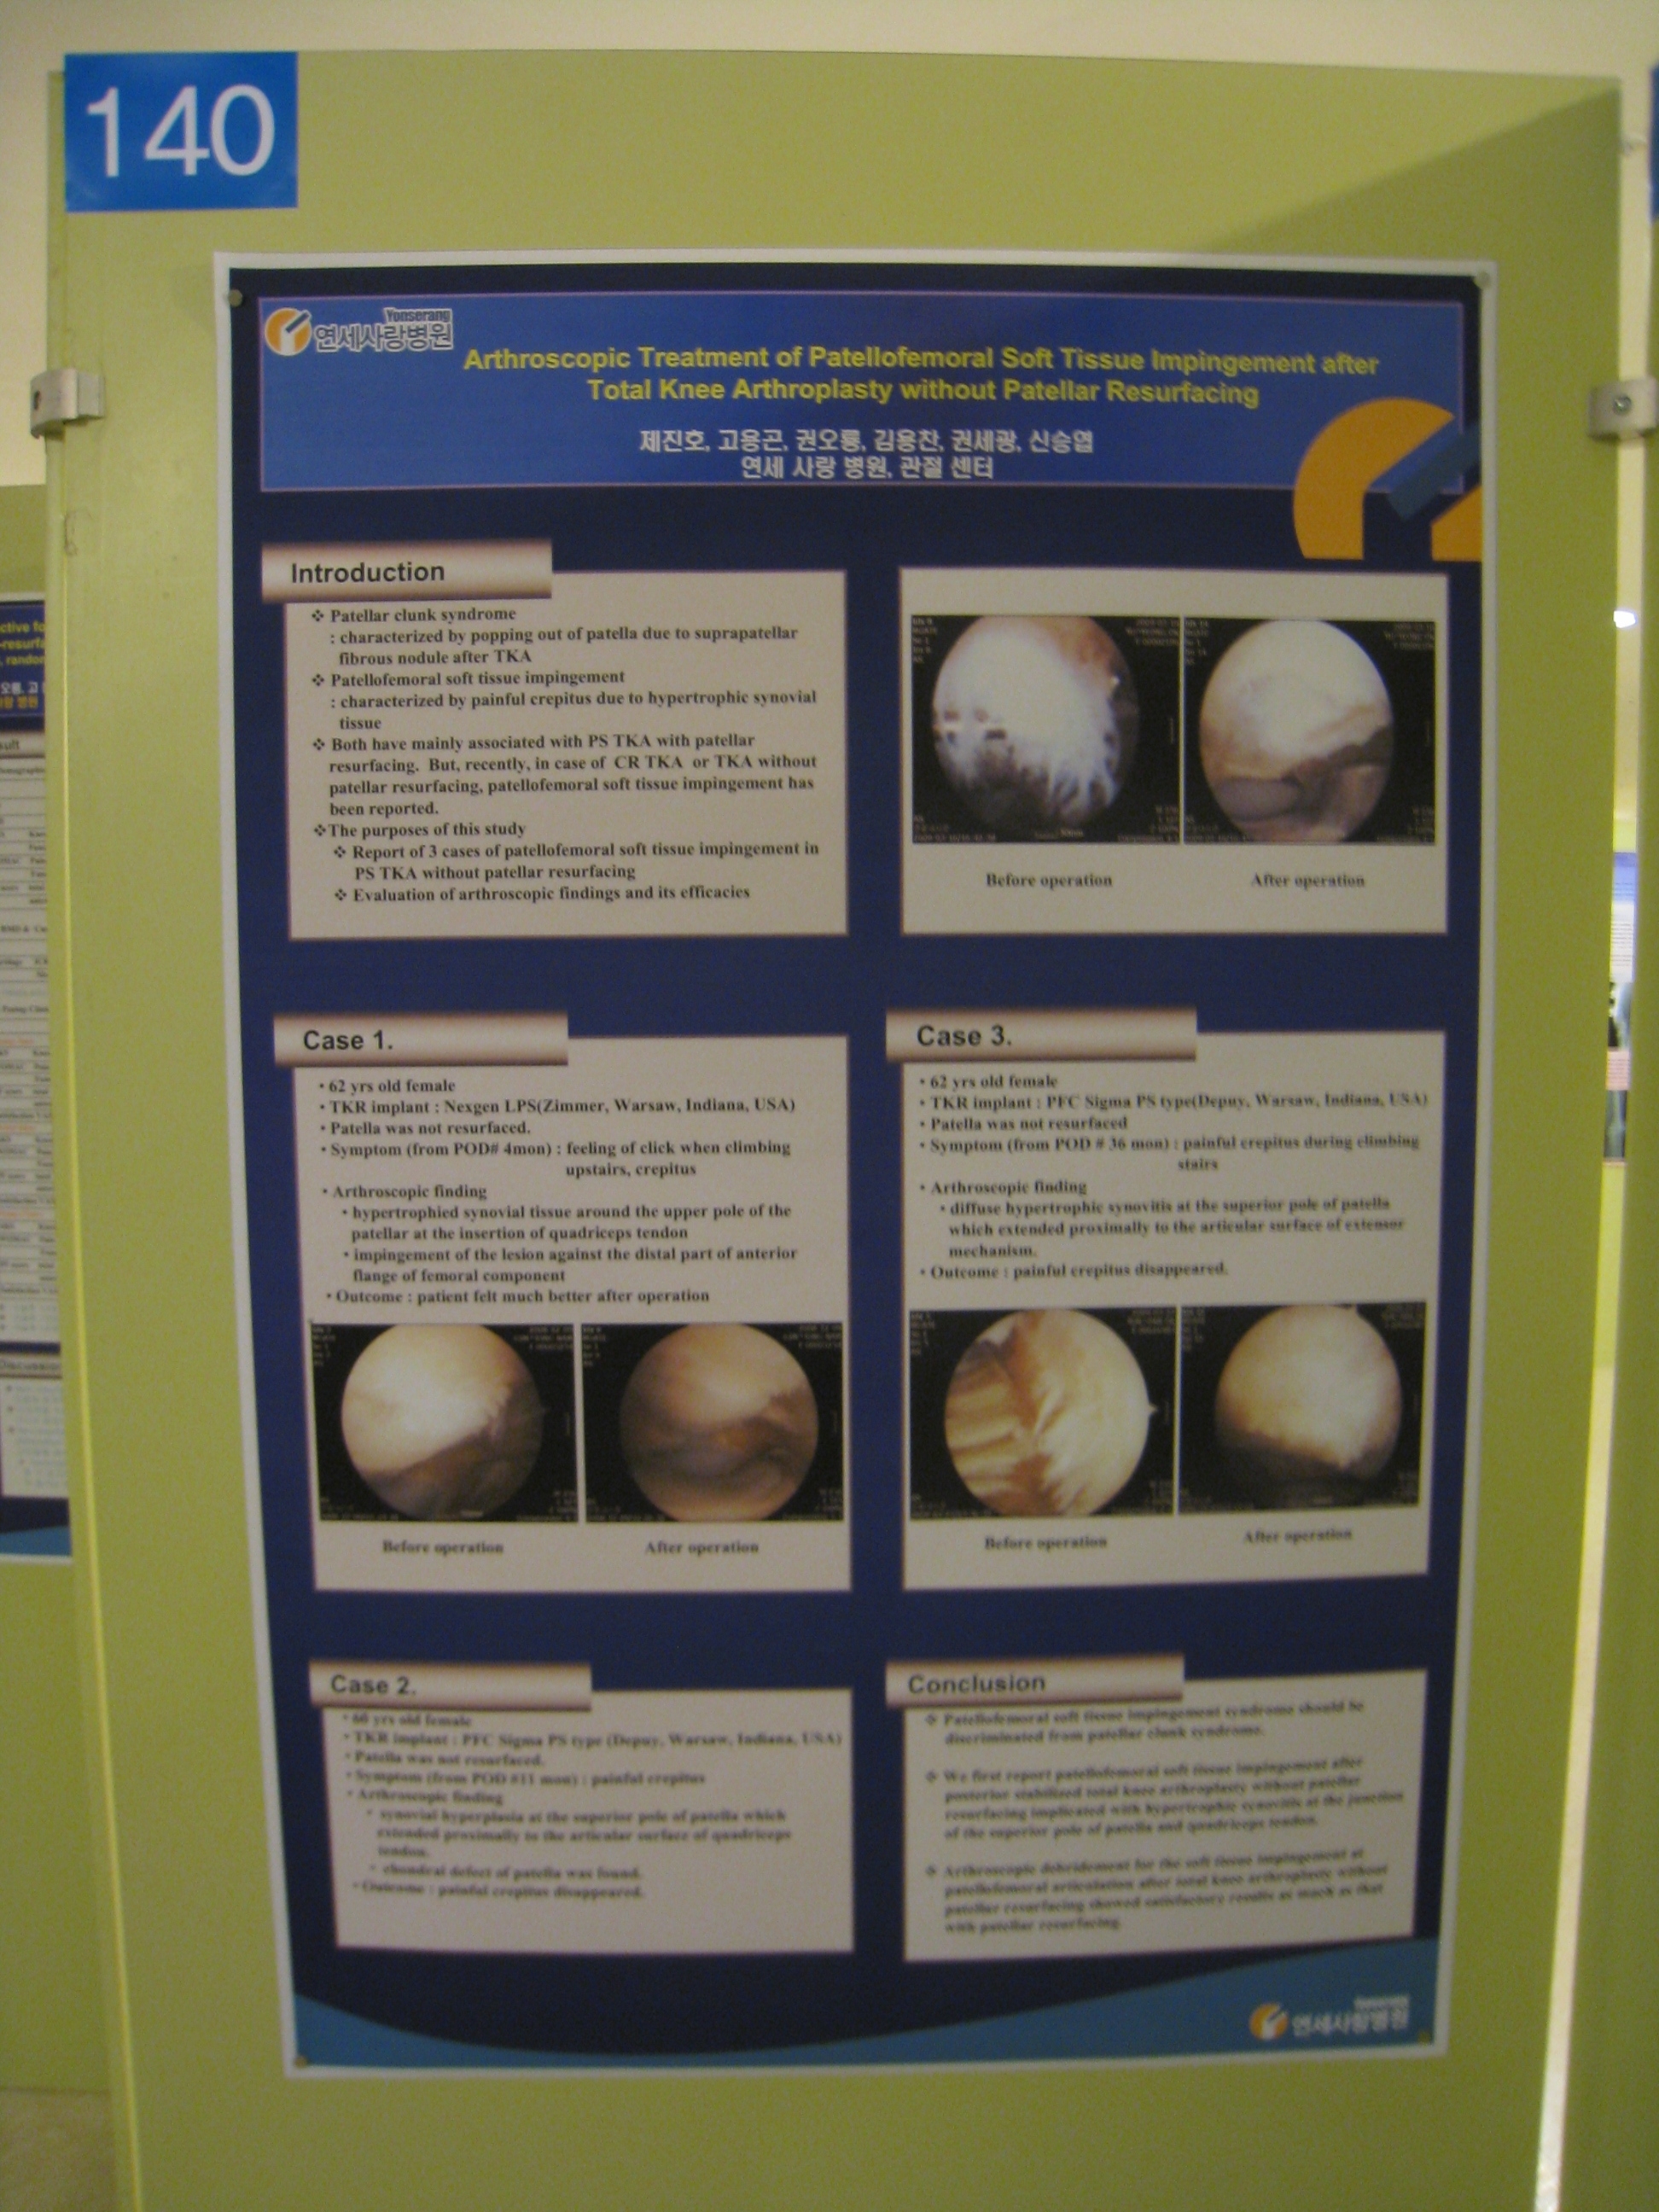 [2009 대한정형외과 학회 포스터]슬개골을 치환하지 않은 인공슬관절 전치환술에서의 슬개골 감입 증후군 게시글의 1번째 첨부파일입니다.